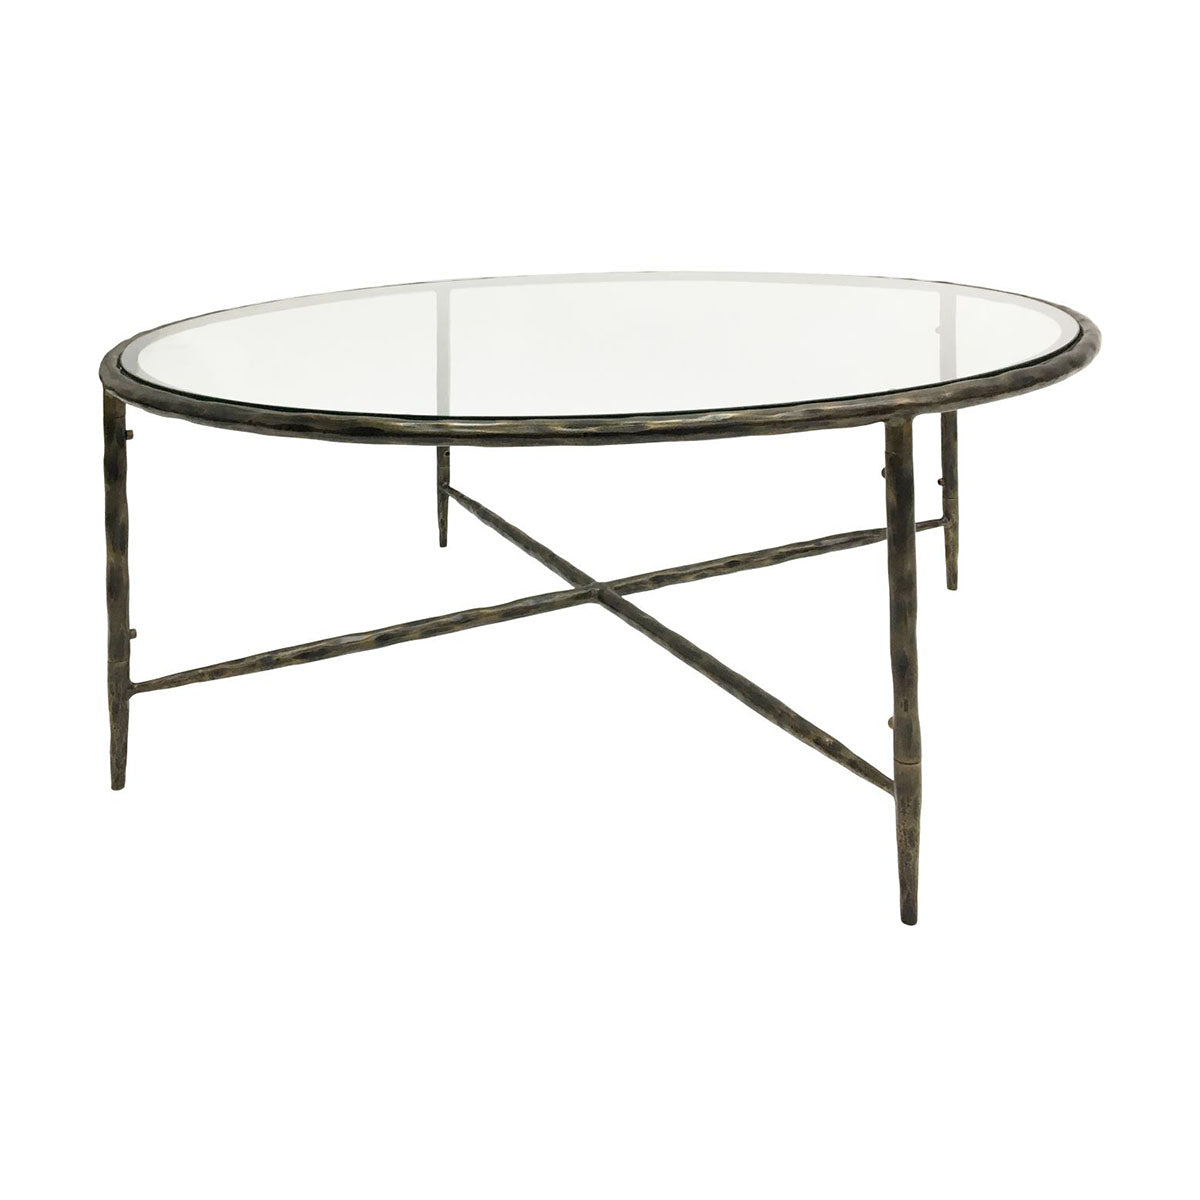 Patterdale Table basse ronde forgée à la main, finition bronze foncé avec plateau en verre